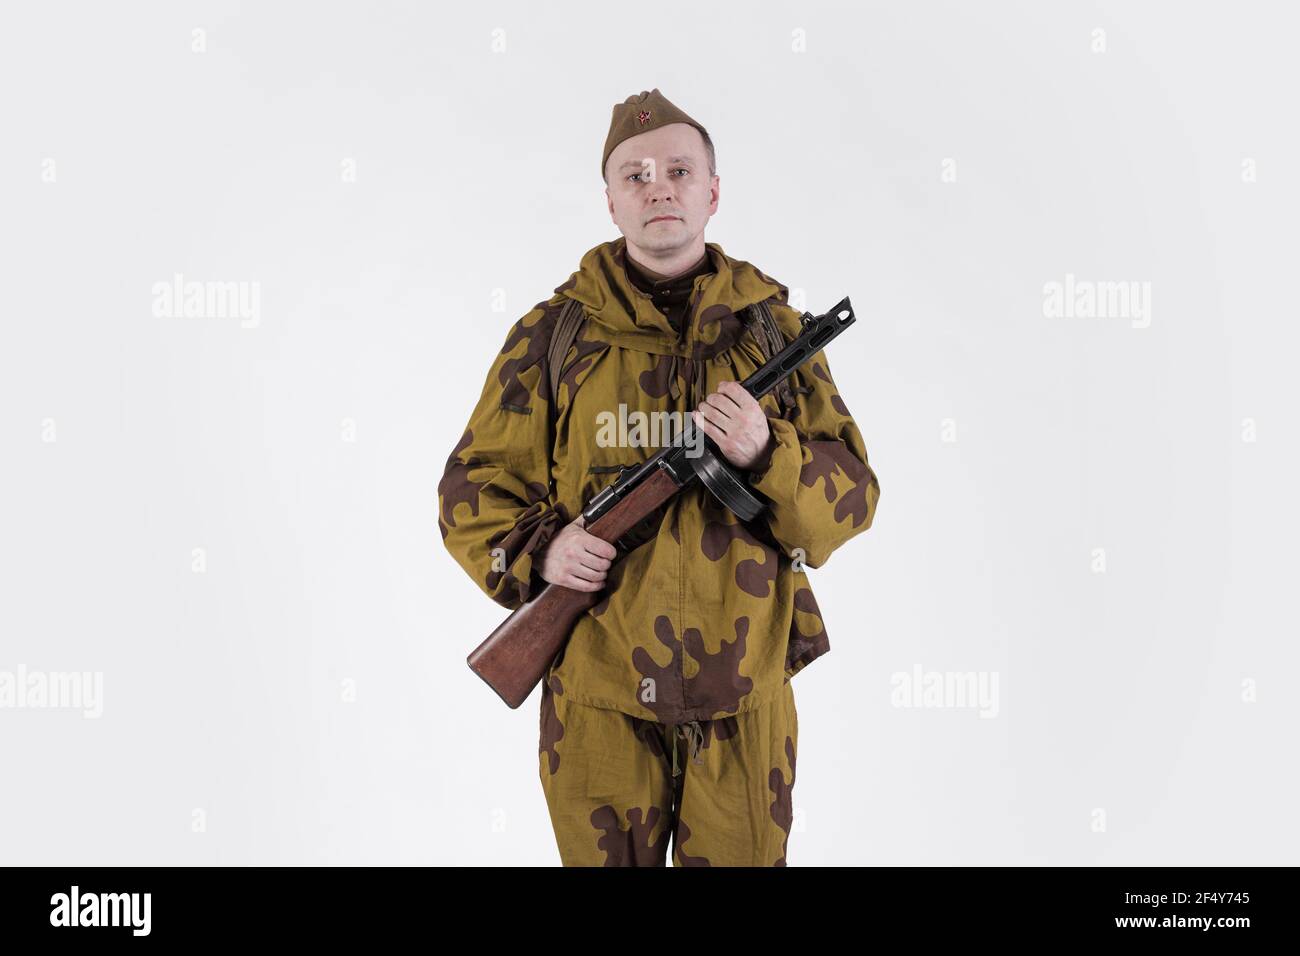 Schauspieler Mann in einer alten Militäruniform und Tarnkleidung Scharfschützenschütze Kleidung eines Soldaten der sowjetischen Armee während des Zweiten Weltkriegs Stockfoto